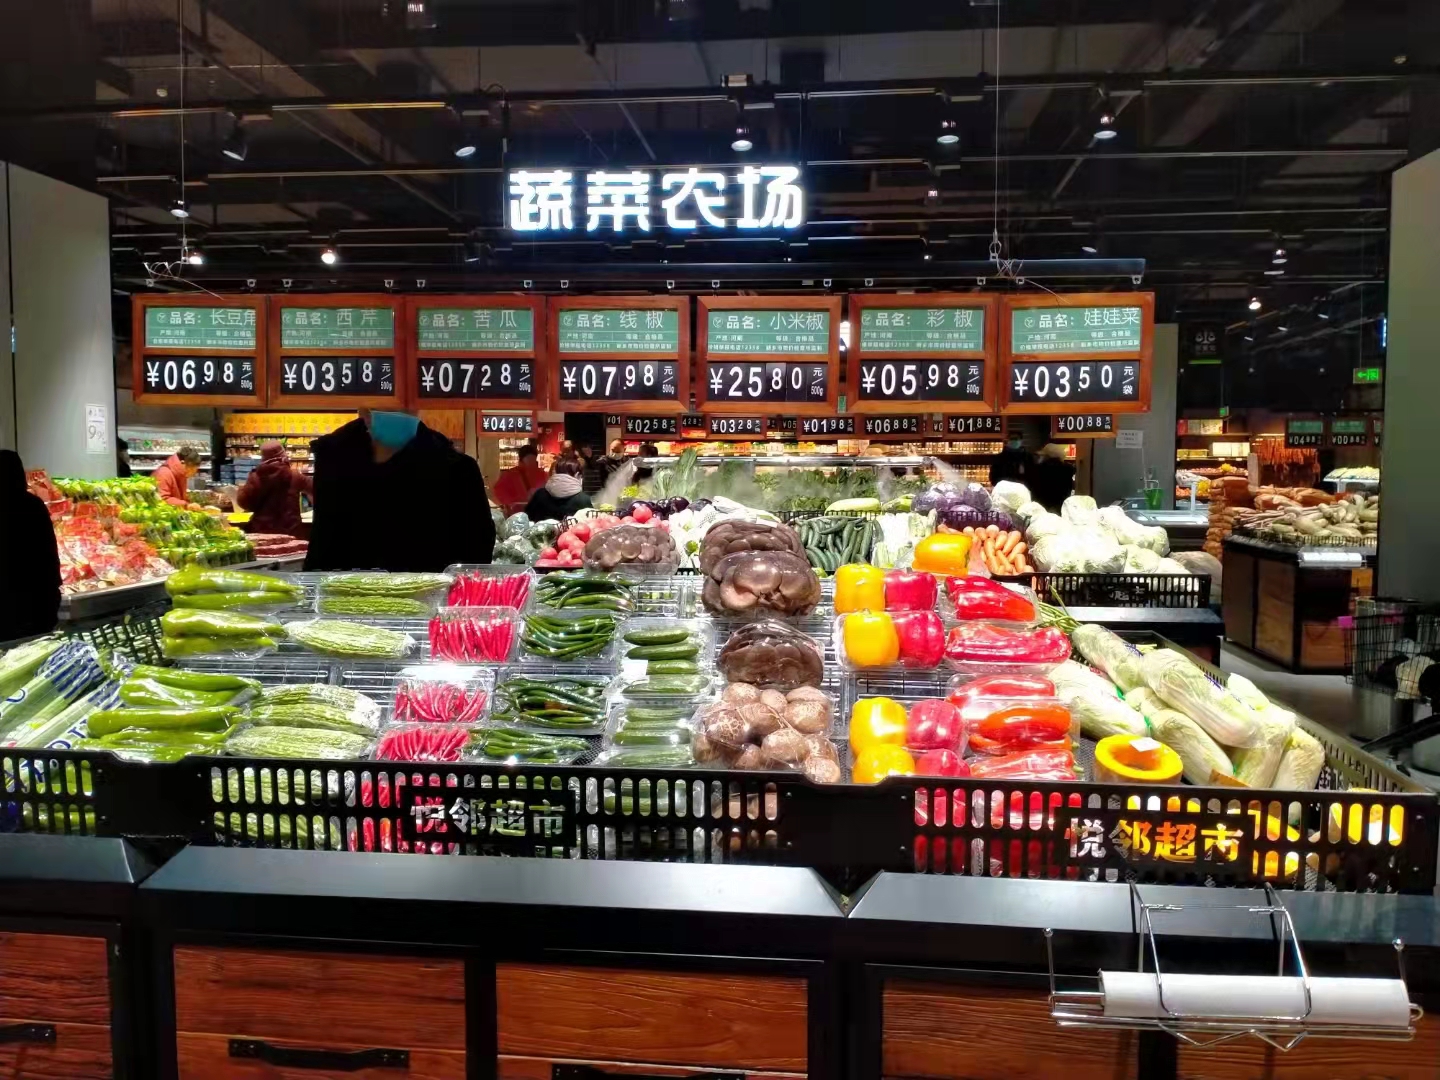 皇晶照明河南分公司案例展示——平顶山叶县亨都精品超市(图3)